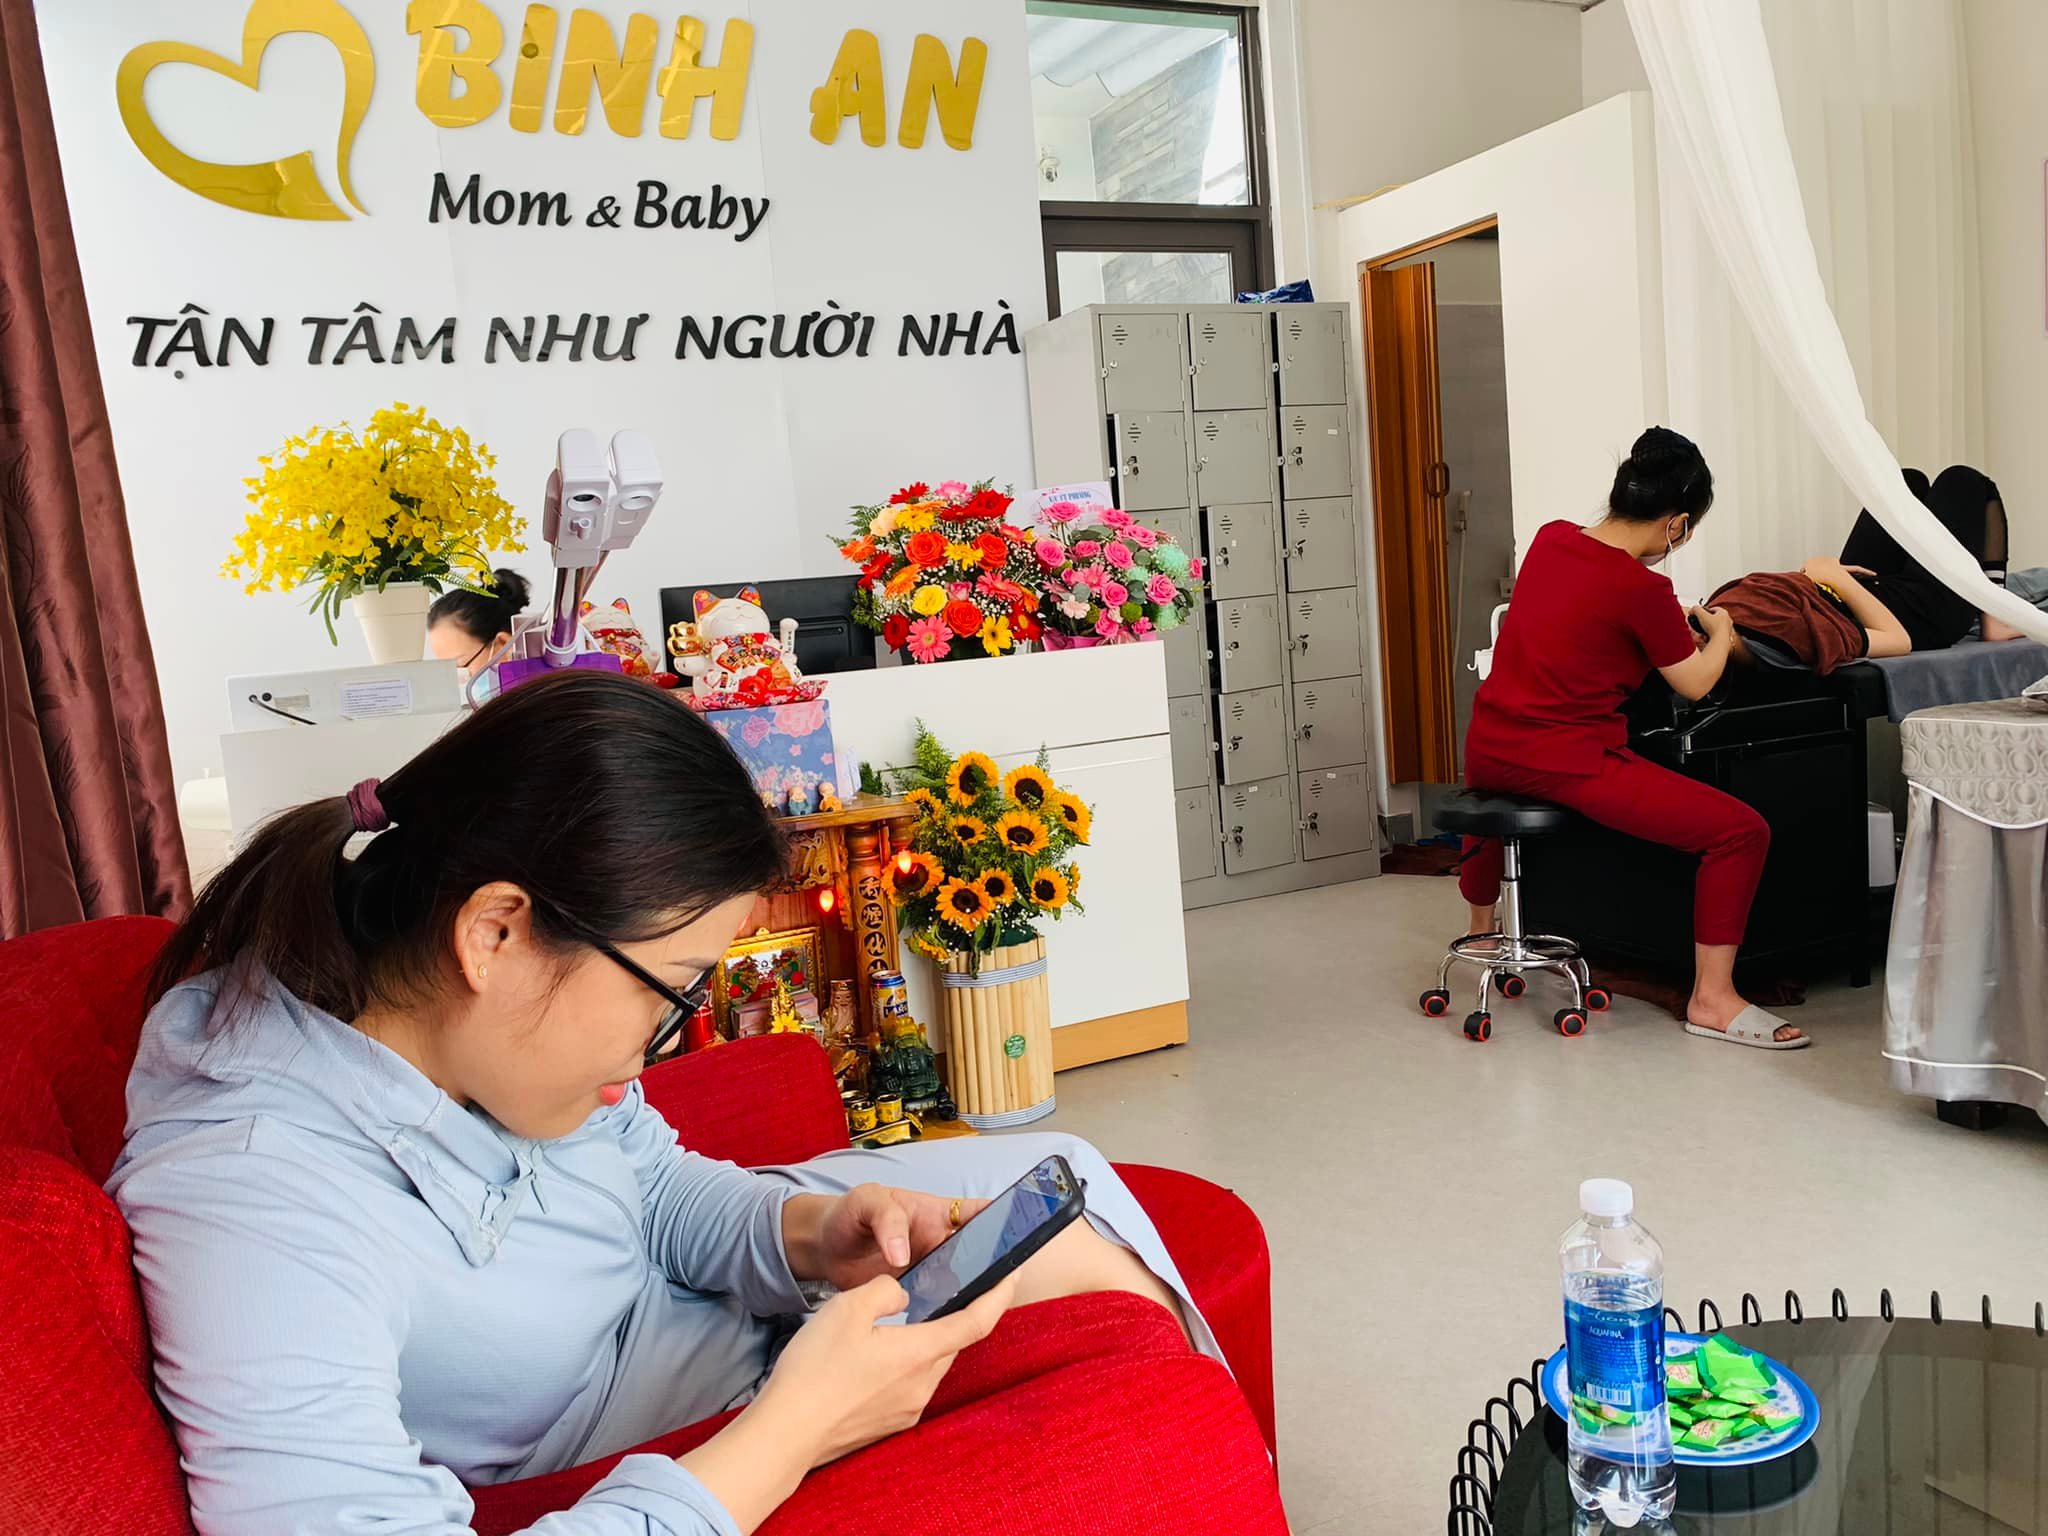 Top 8 Dịch vụ chăm sóc mẹ và bé uy tín nhất Đà Nẵng -  Bình An Care